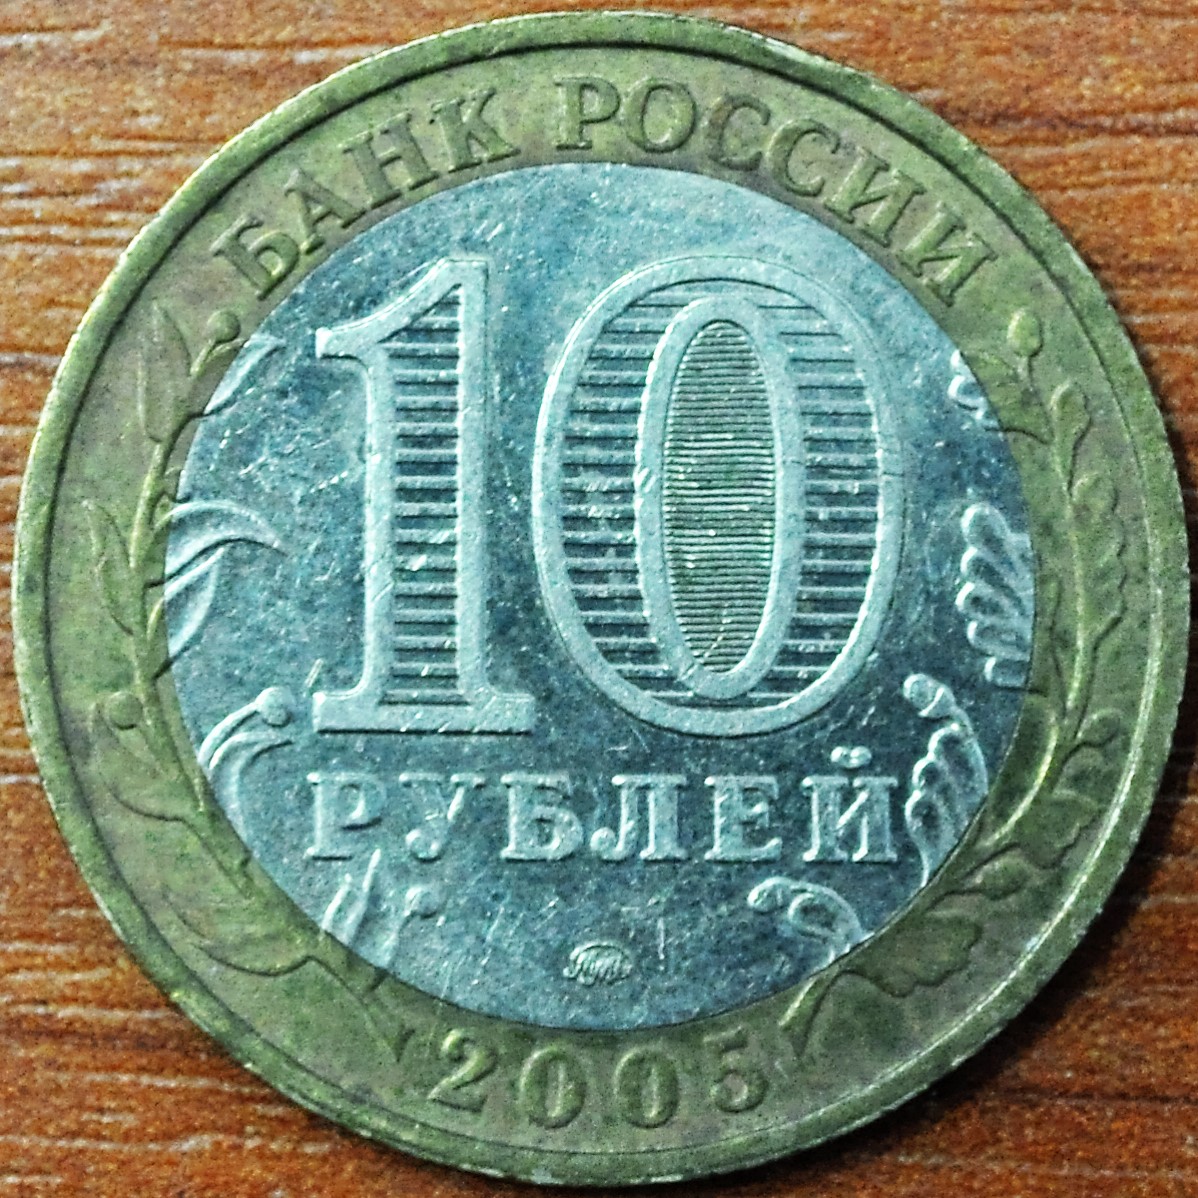 10 рублей. 60-я годовщина Победы в Великой Отечественной войне 1941-1945 гг